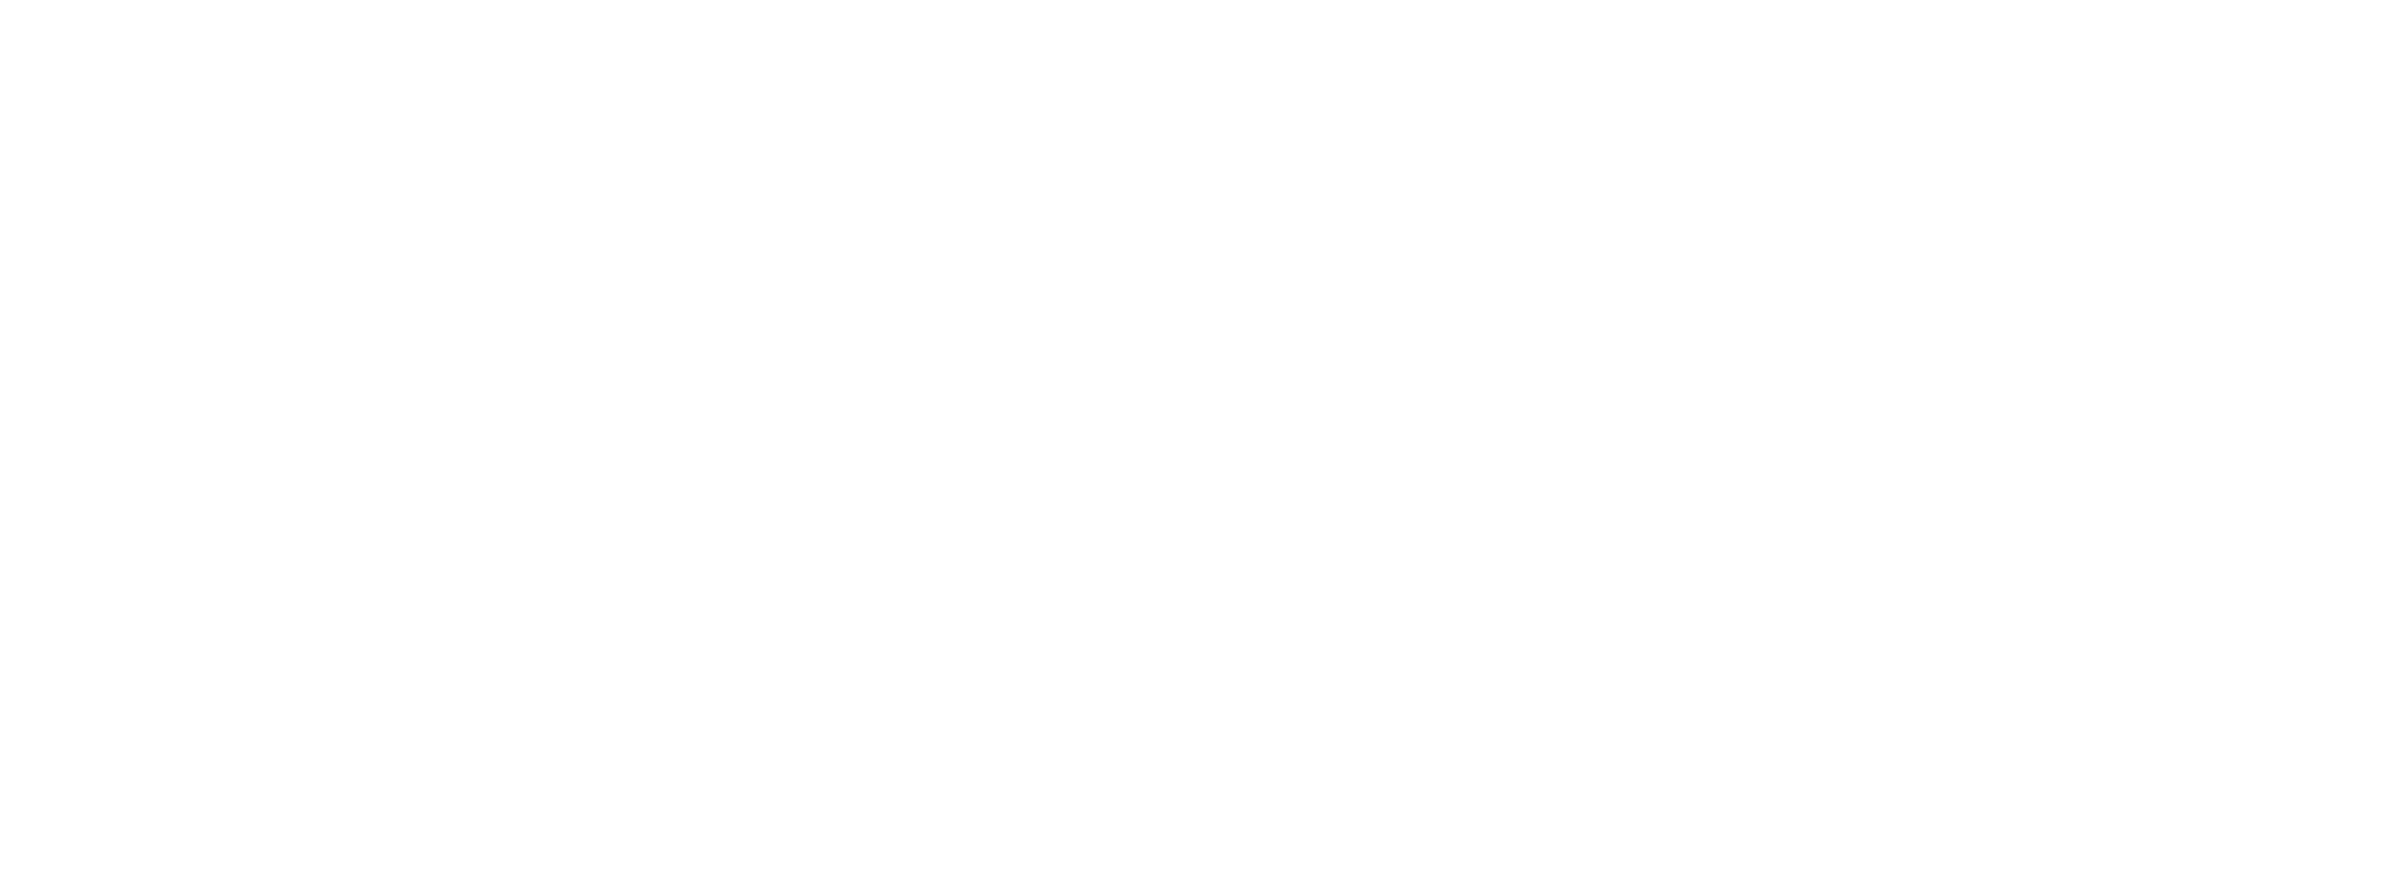 Marin Shakespeare Company